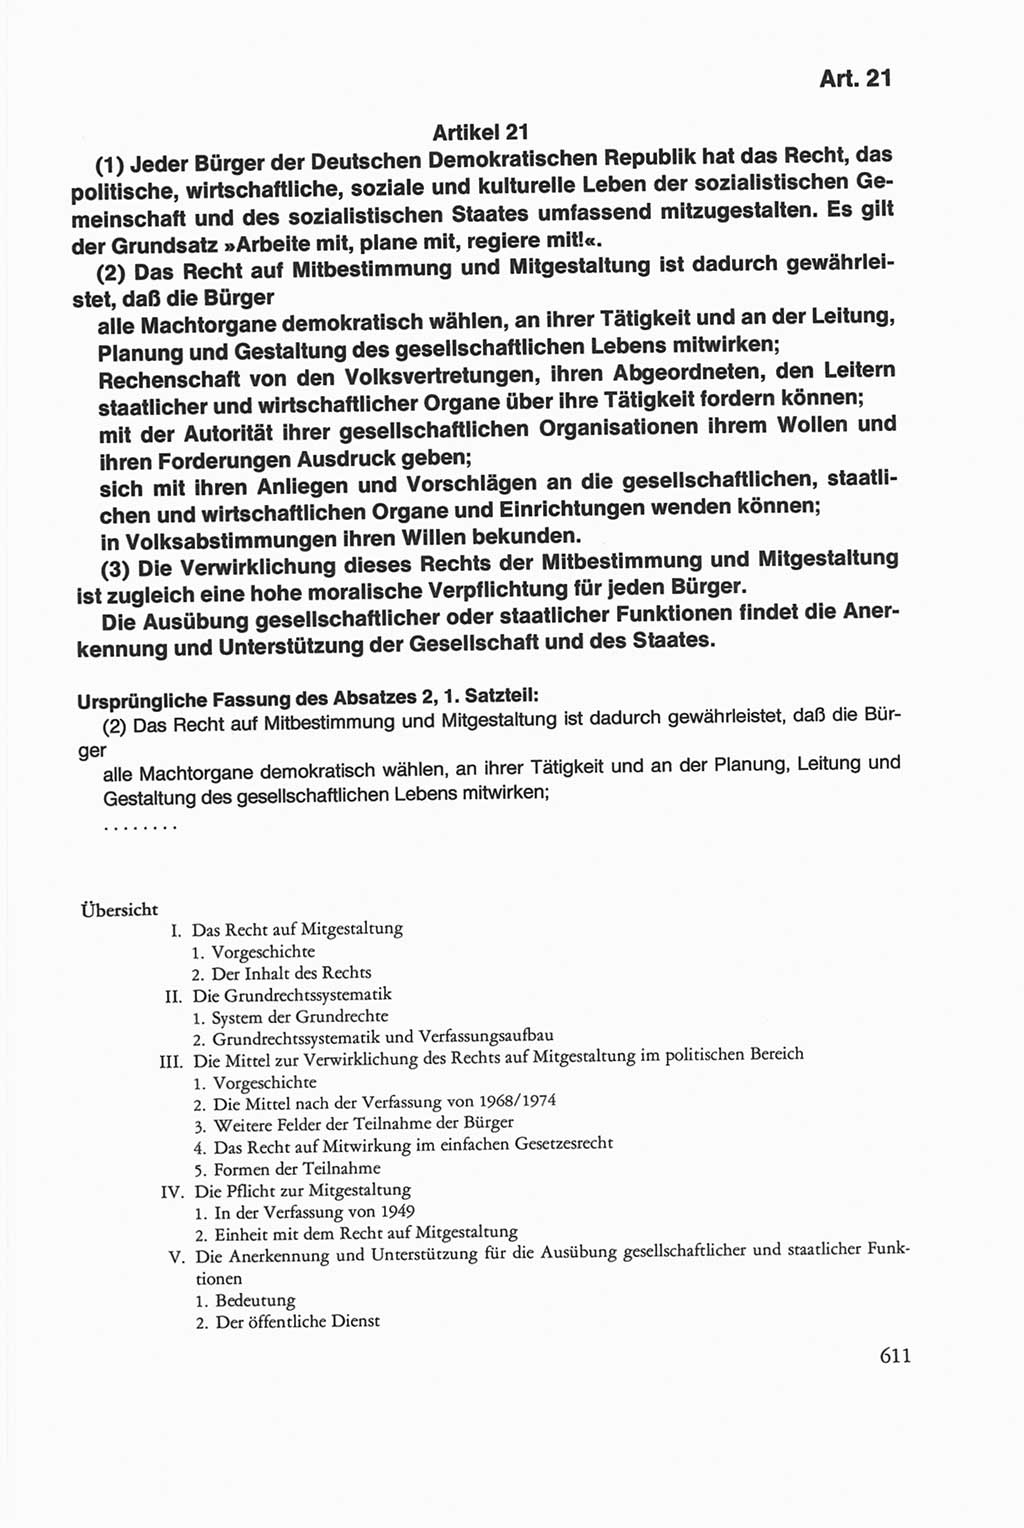 Die sozialistische Verfassung der Deutschen Demokratischen Republik (DDR), Kommentar mit einem Nachtrag 1997, Seite 611 (Soz. Verf. DDR Komm. Nachtr. 1997, S. 611)